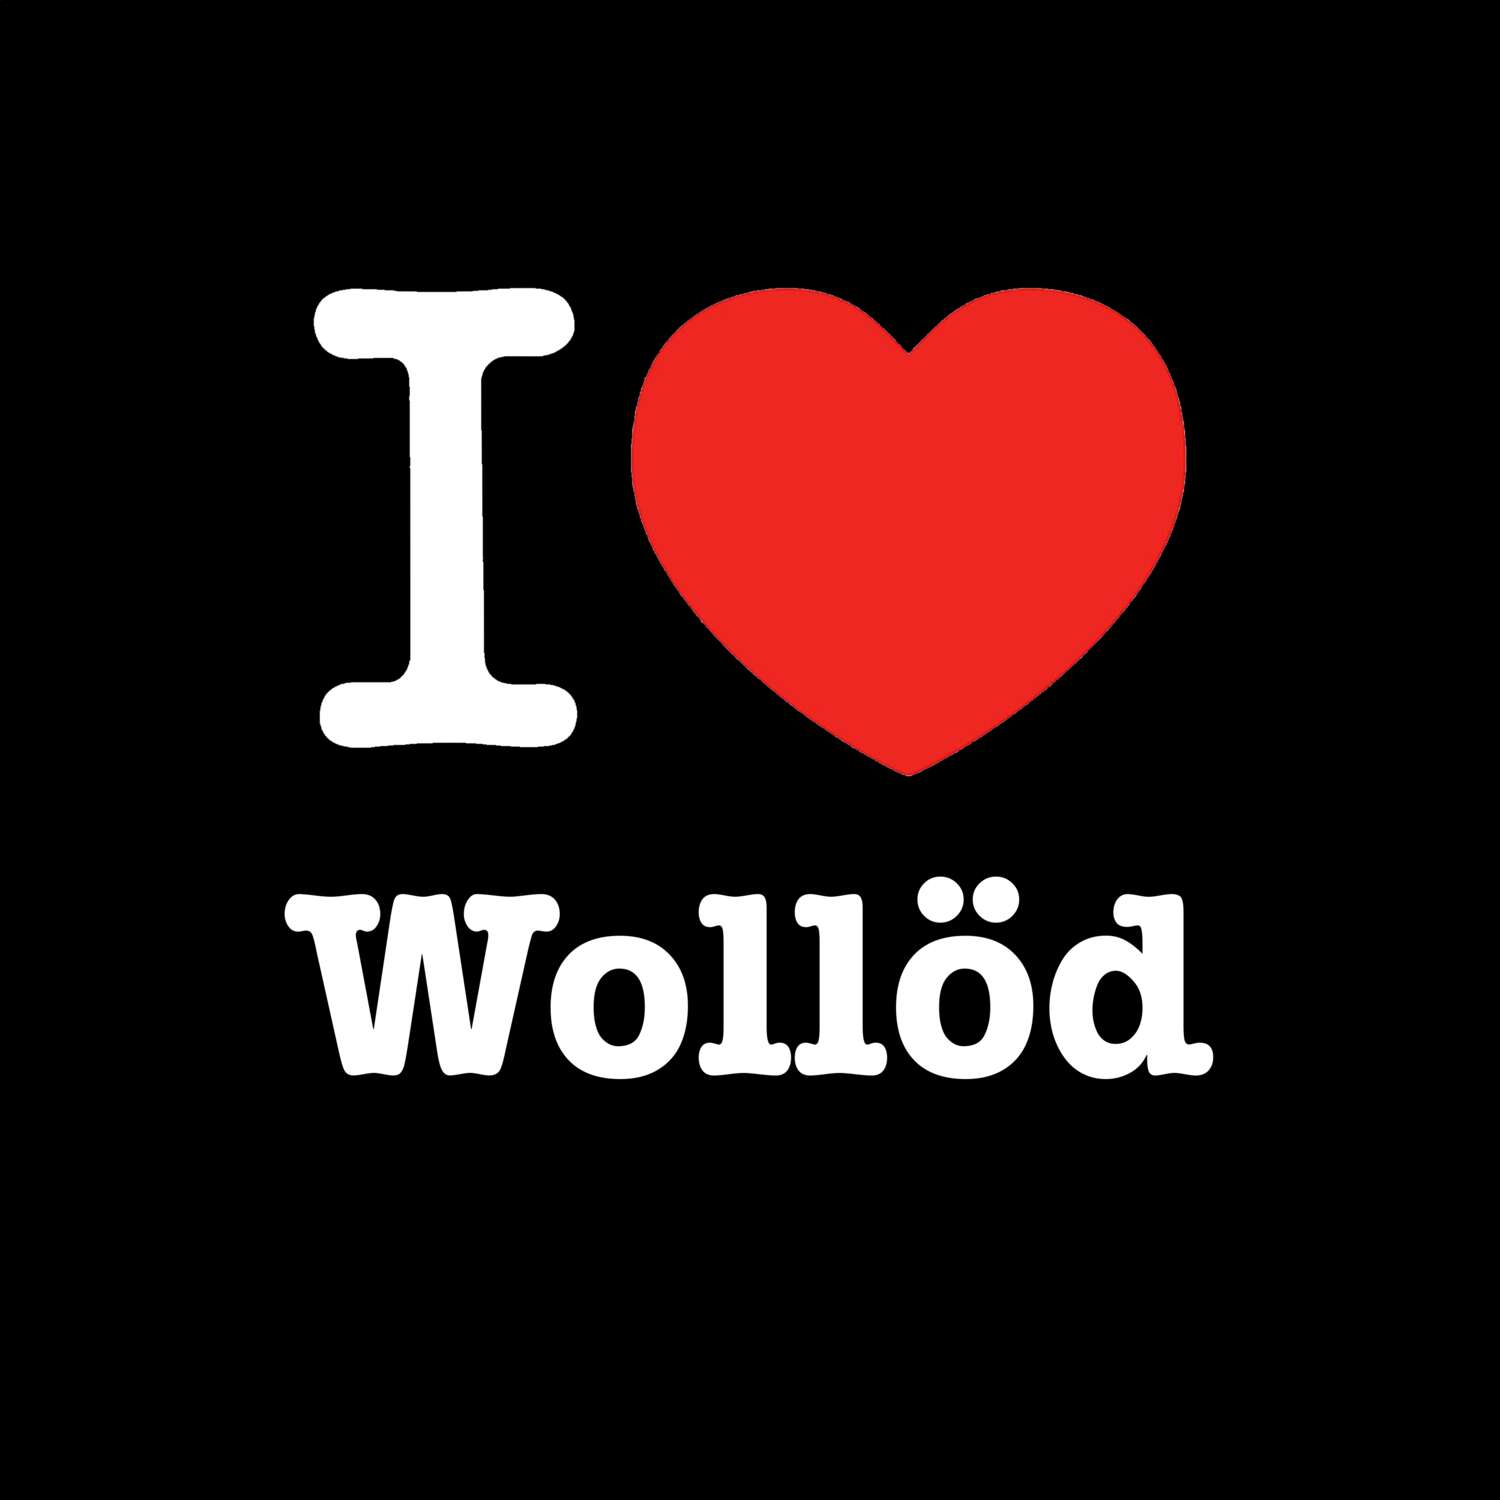 Wollöd T-Shirt »I love«